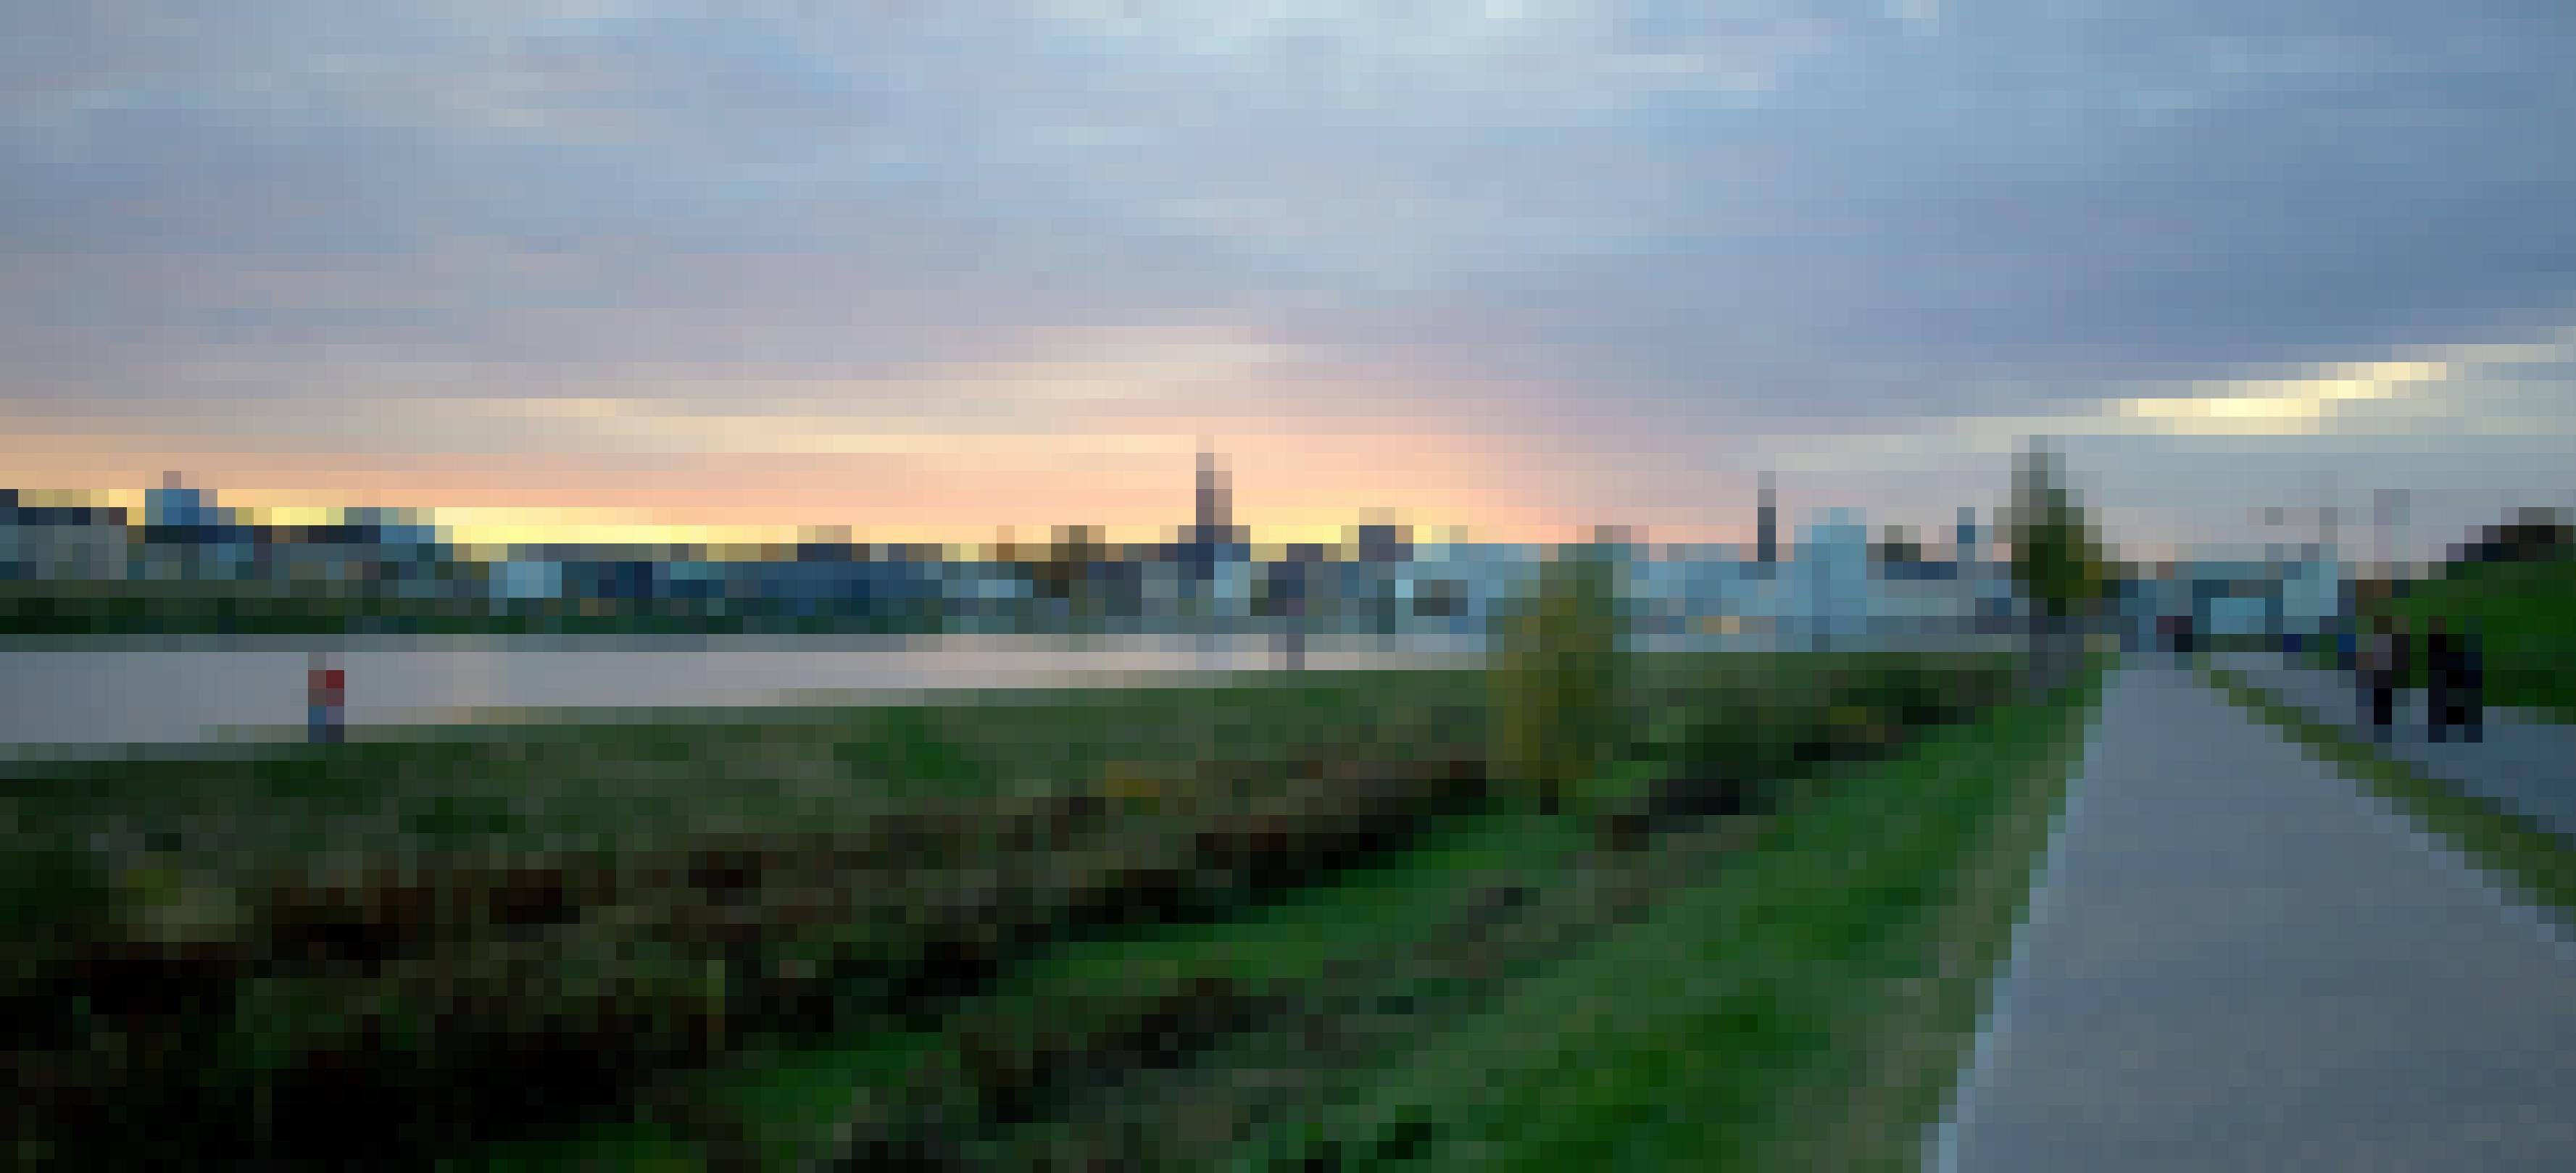 Der Phoenixsee in Dortmund ist als Wohn- und Naherholungsgebiet ein gutes Beispiel für die Rekultivierung einer alten Industriefläche. Früher wurde dort Stahl produziert. Dieses Foto entstand im Jahr 2013.